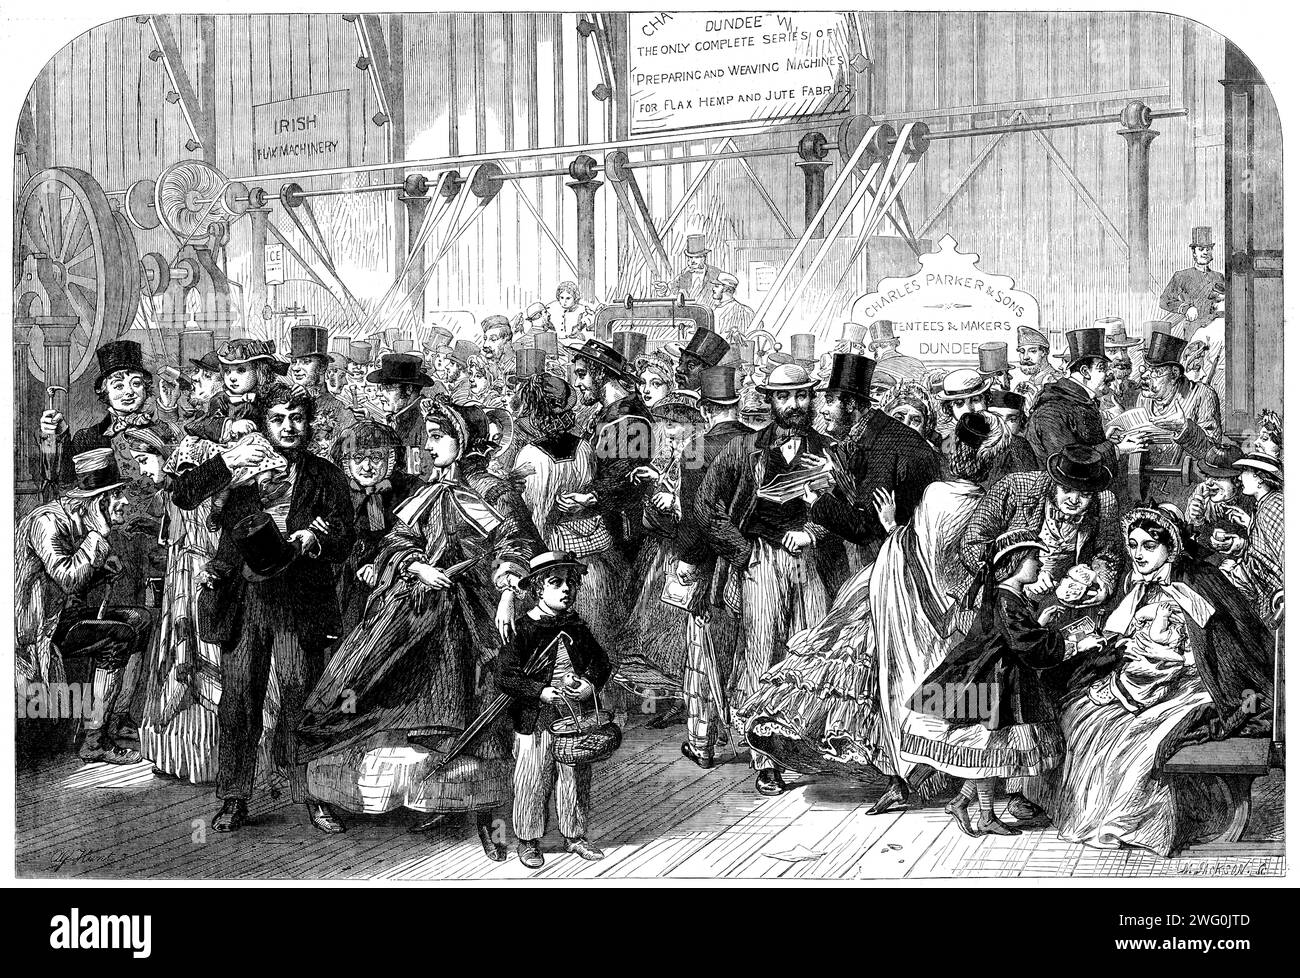 Shilling Day auf der Internationalen Ausstellung, 1862. Die Internationale Ausstellung 1862 war eine Weltausstellung in South Kensington, London. Heute befinden sich hier Museen wie das Naturkundemuseum und das Wissenschaftsmuseum. Aus Illustrated London News, 1862. Stockfoto